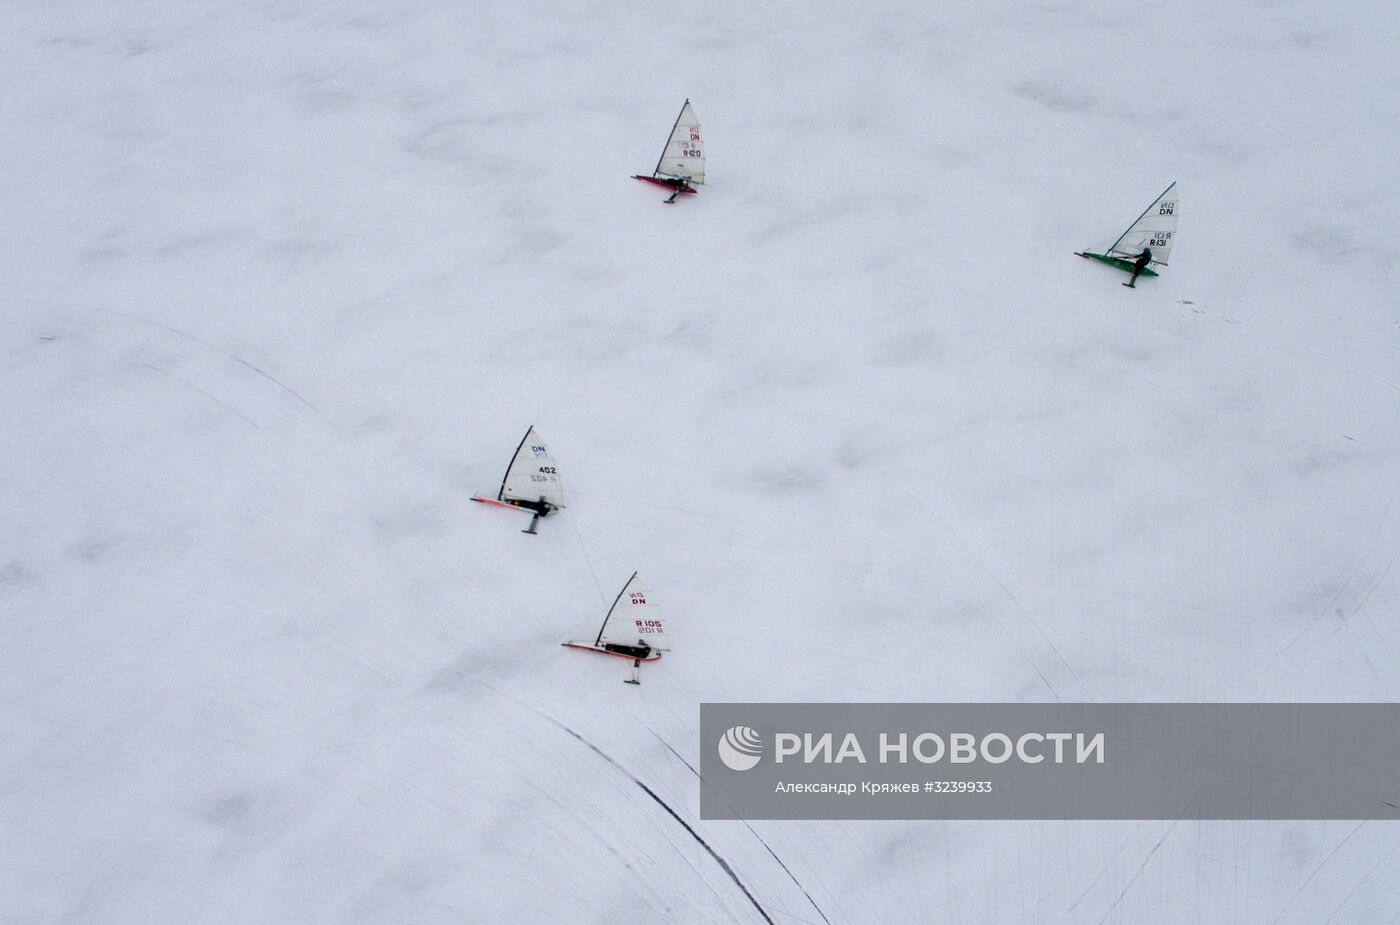 Соревнования по буерному спорту на Обском море в Новосибирске